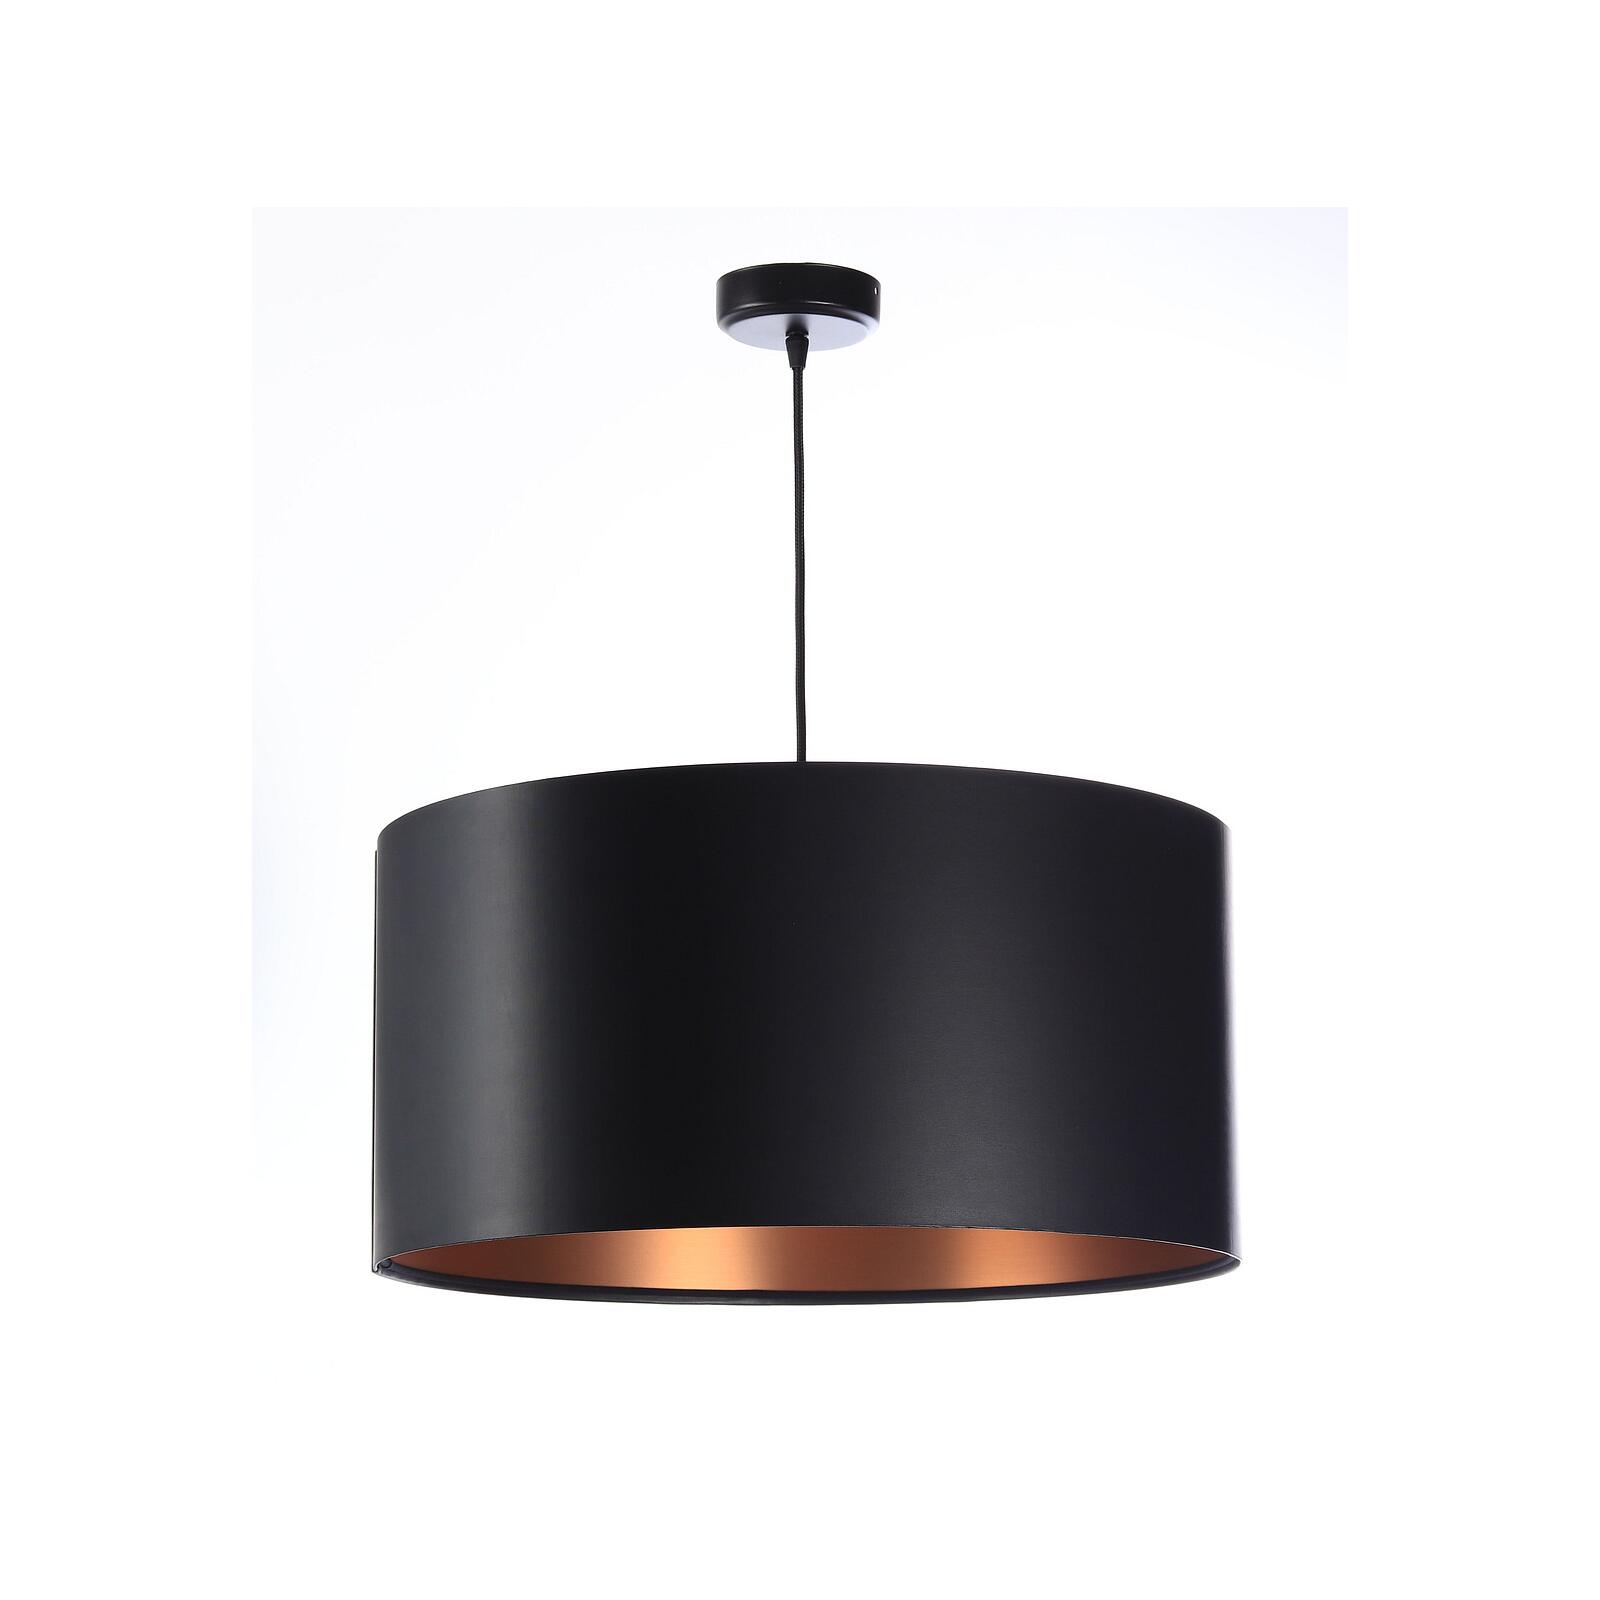 Pendelleuchte 0E0-002-50CM Latexschirm schwarz, kupfer 50 cm - Lampen &  Leuchten Onlineshop